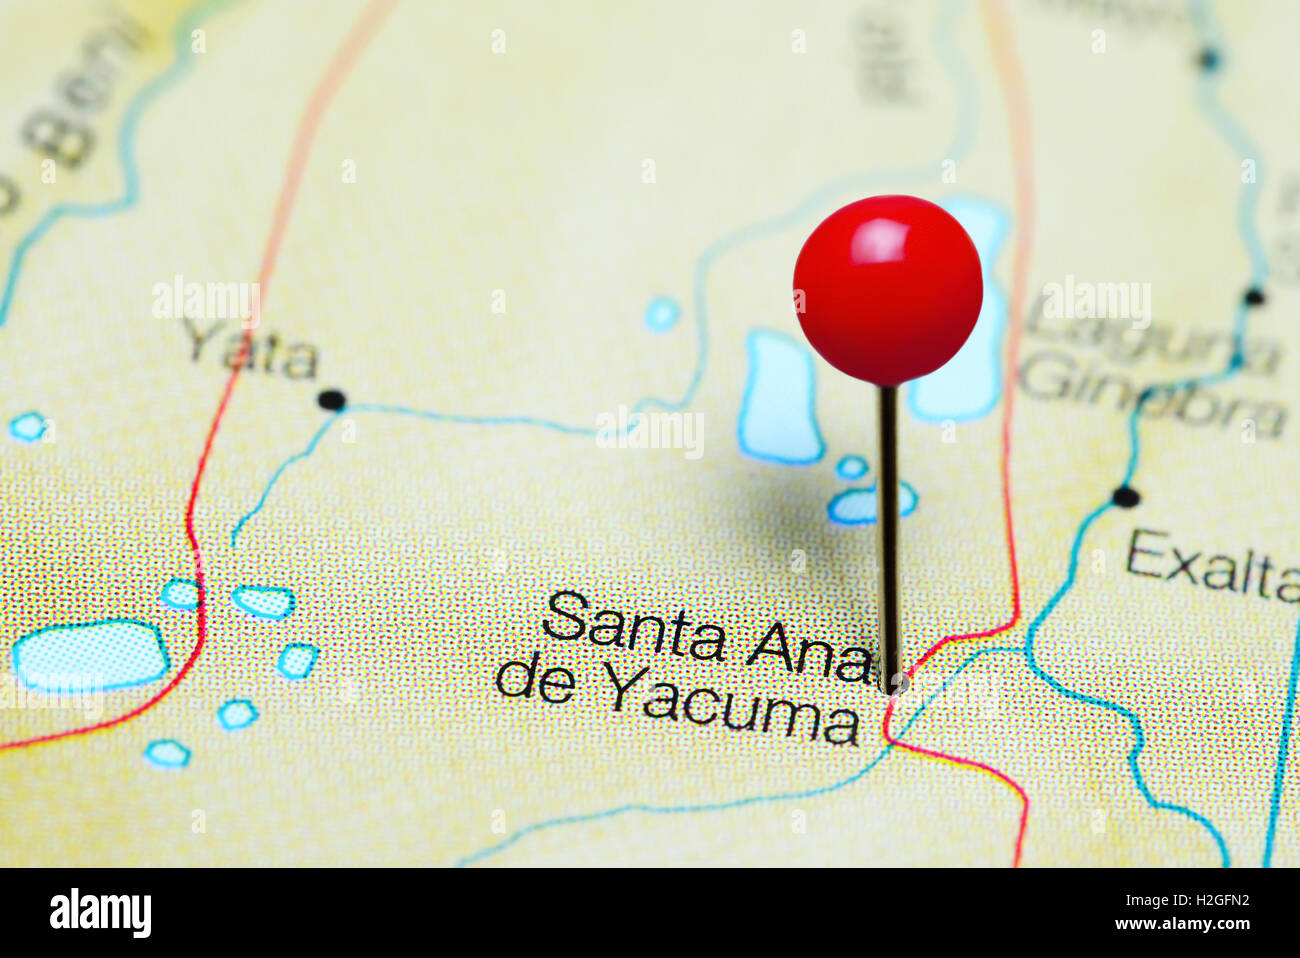 Santa Ana de Yacuma pinned on a map of Bolivia Stock Photo